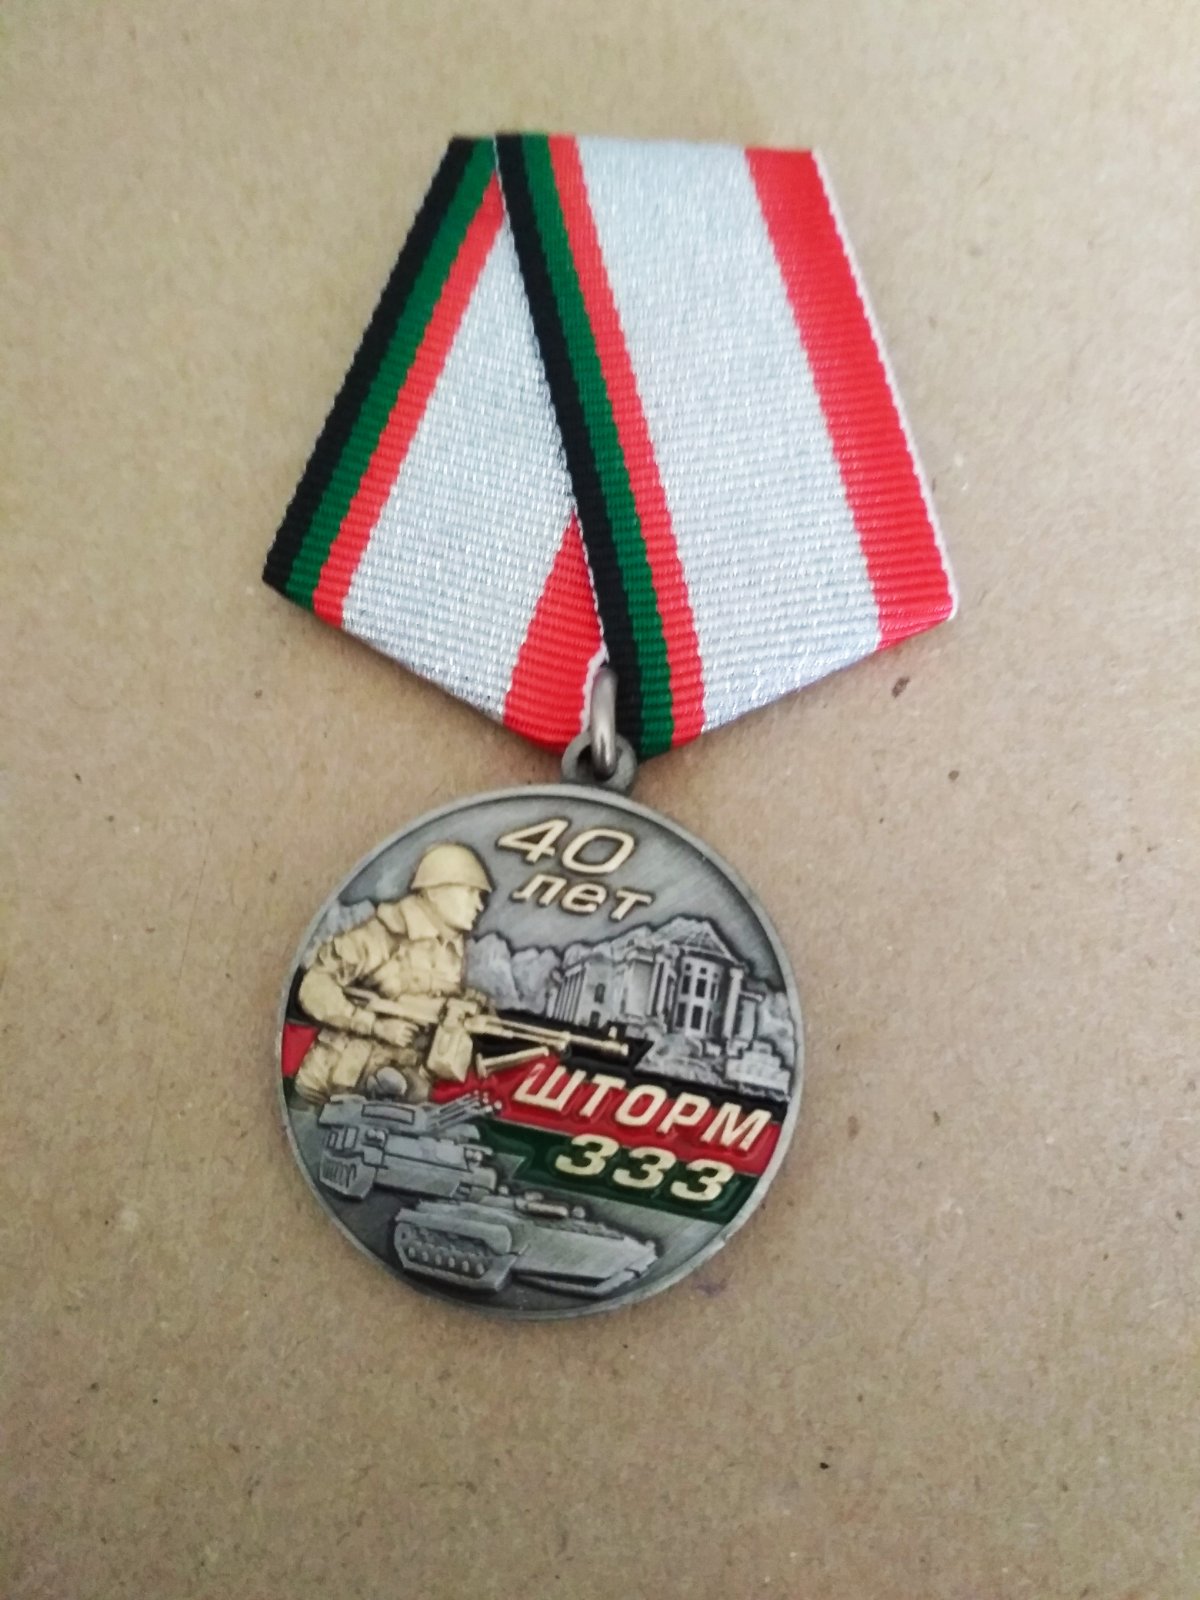 Медаль "40 лет операции "Шторм 333"